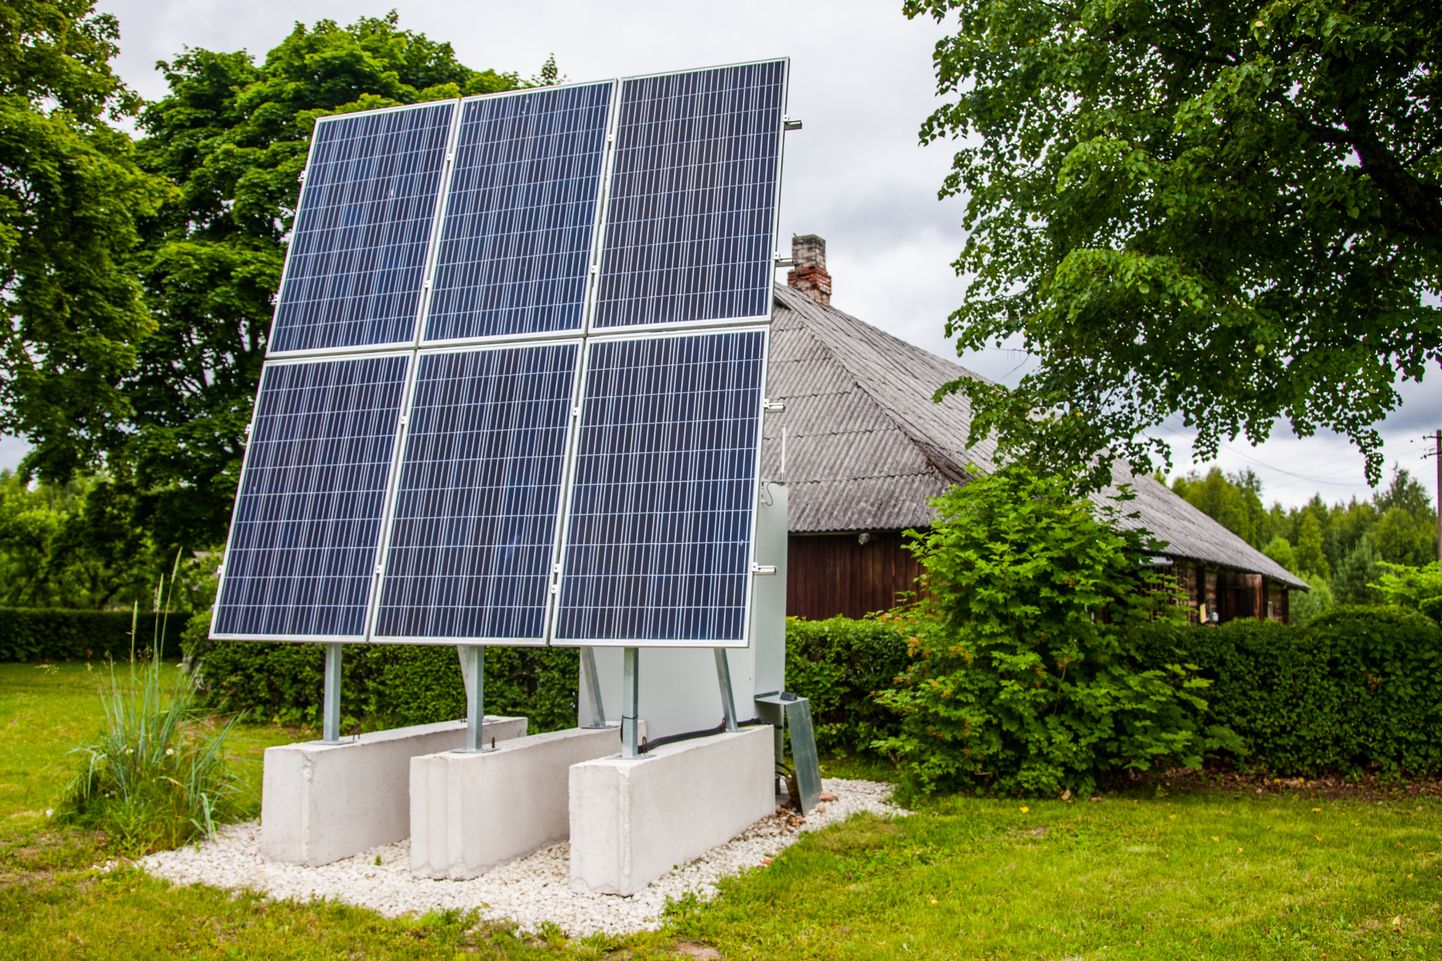 Päikesepaneele paigutades tuleks esmalt välja uurida, kui palju ettevõte või majapidamine aastas elektrit tarbib, ning selle järgi jaama võimsus valida.